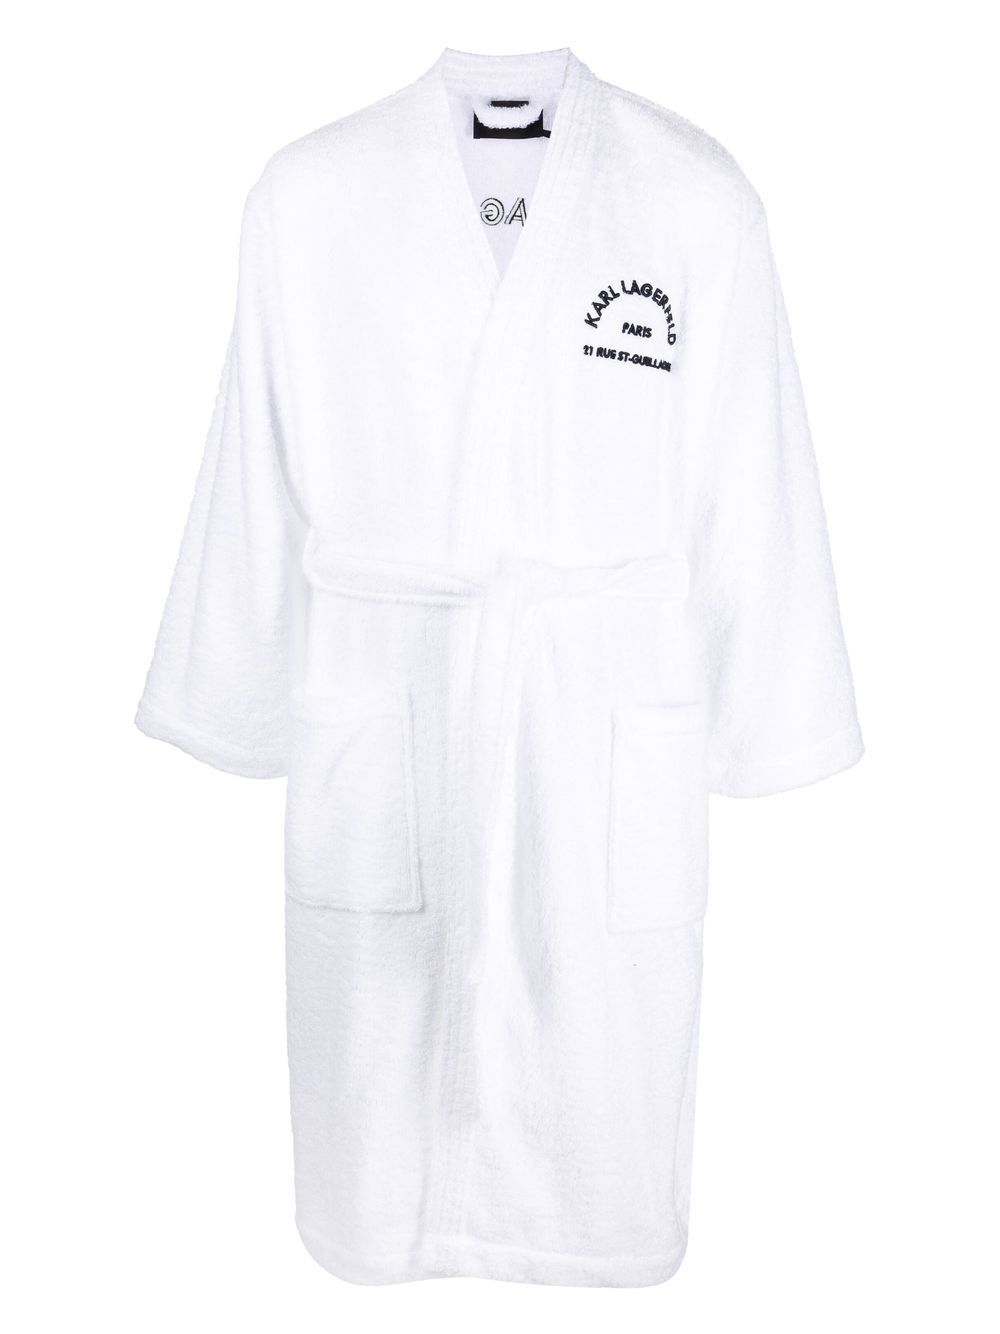 Karl Lagerfeld embroidered logo bathrobe - White von Karl Lagerfeld